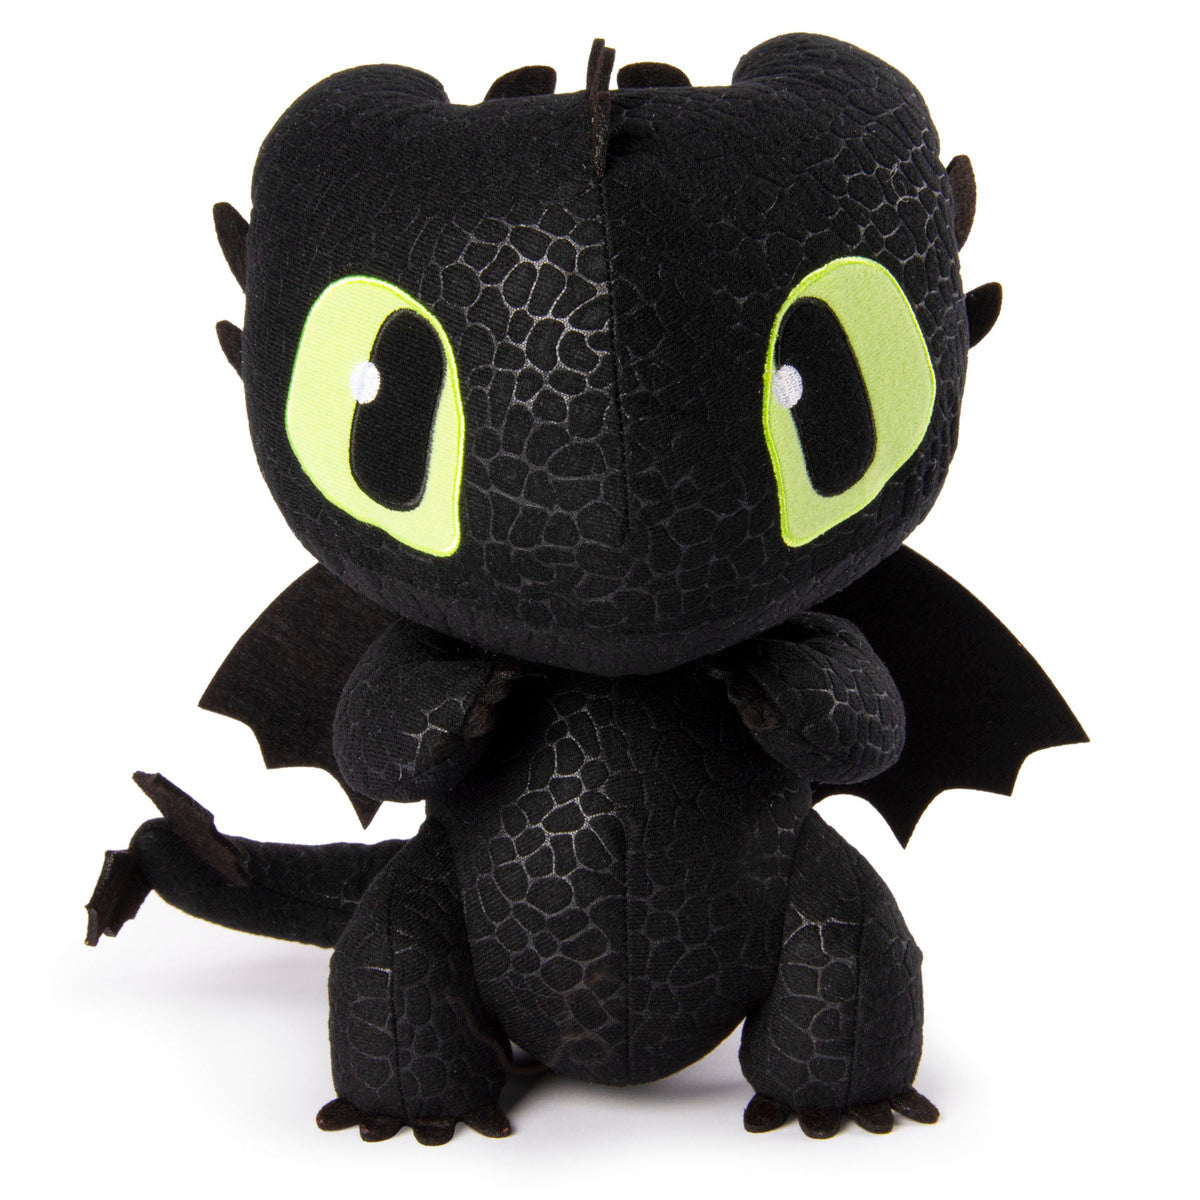 DreamWorks Dragons: Legends Evolved 25.4 cm Plush - Toothless